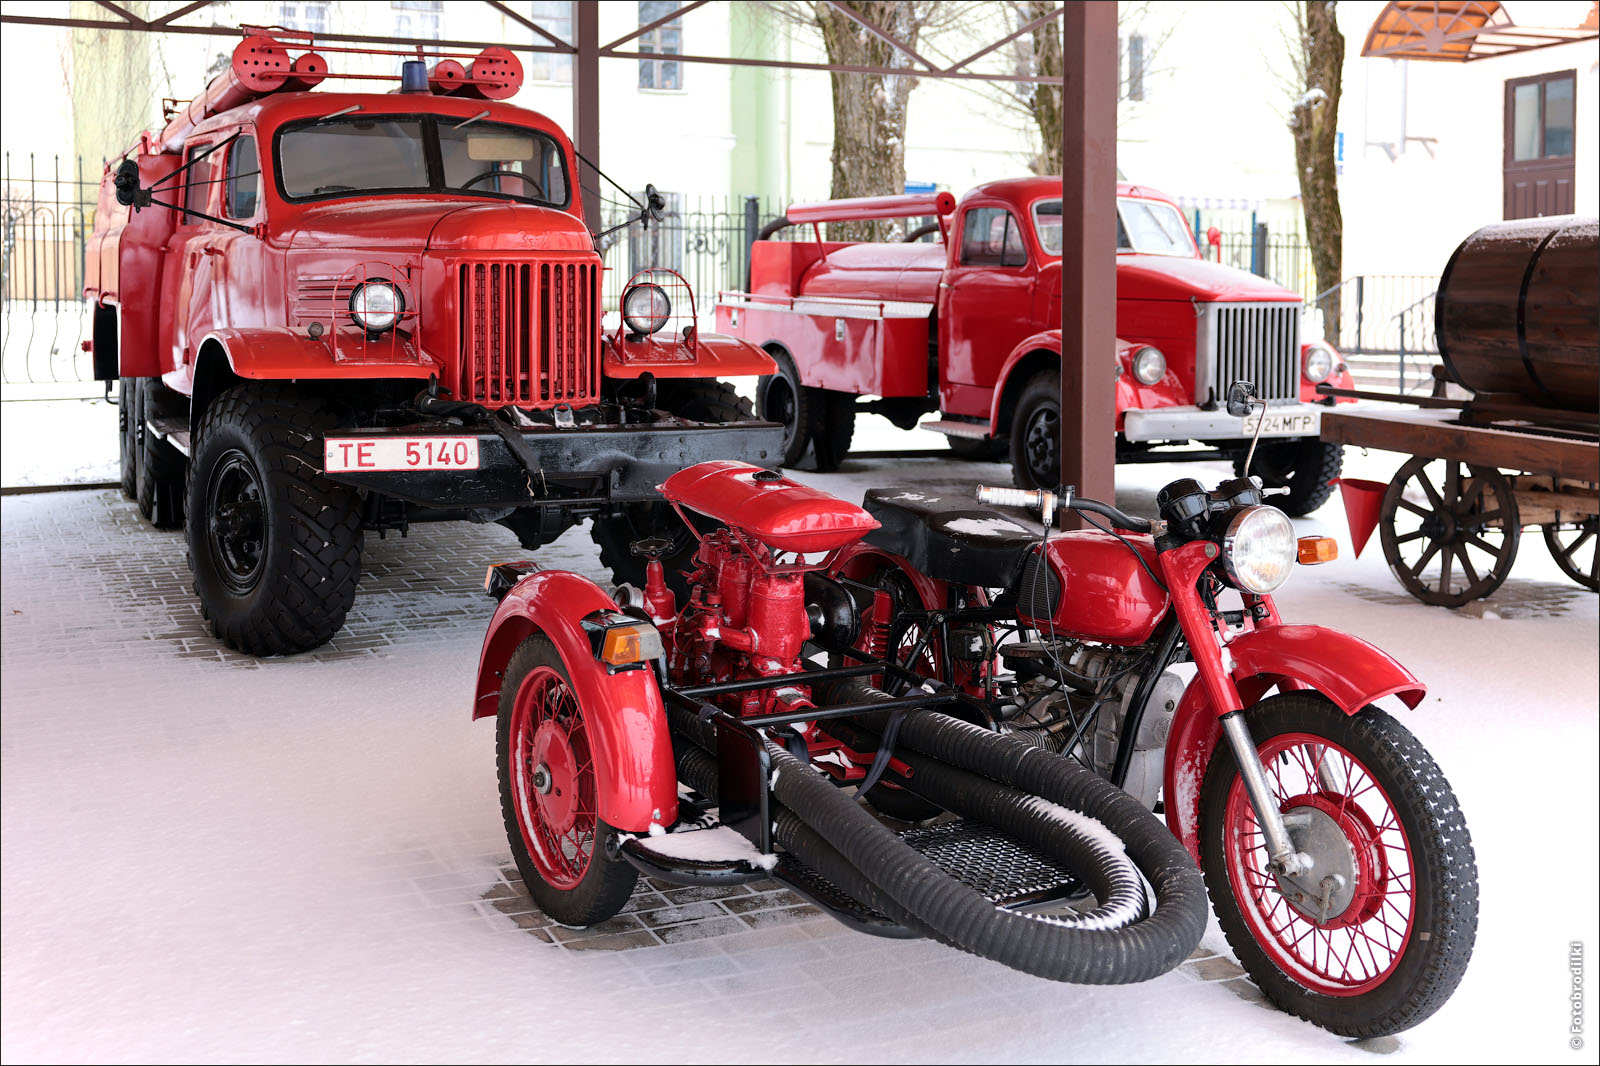 Мотоцикл Днепр с коляской, пожарный ЗИЛ-151 и цистерна ГАЗ-51, Могилев, Беларусь